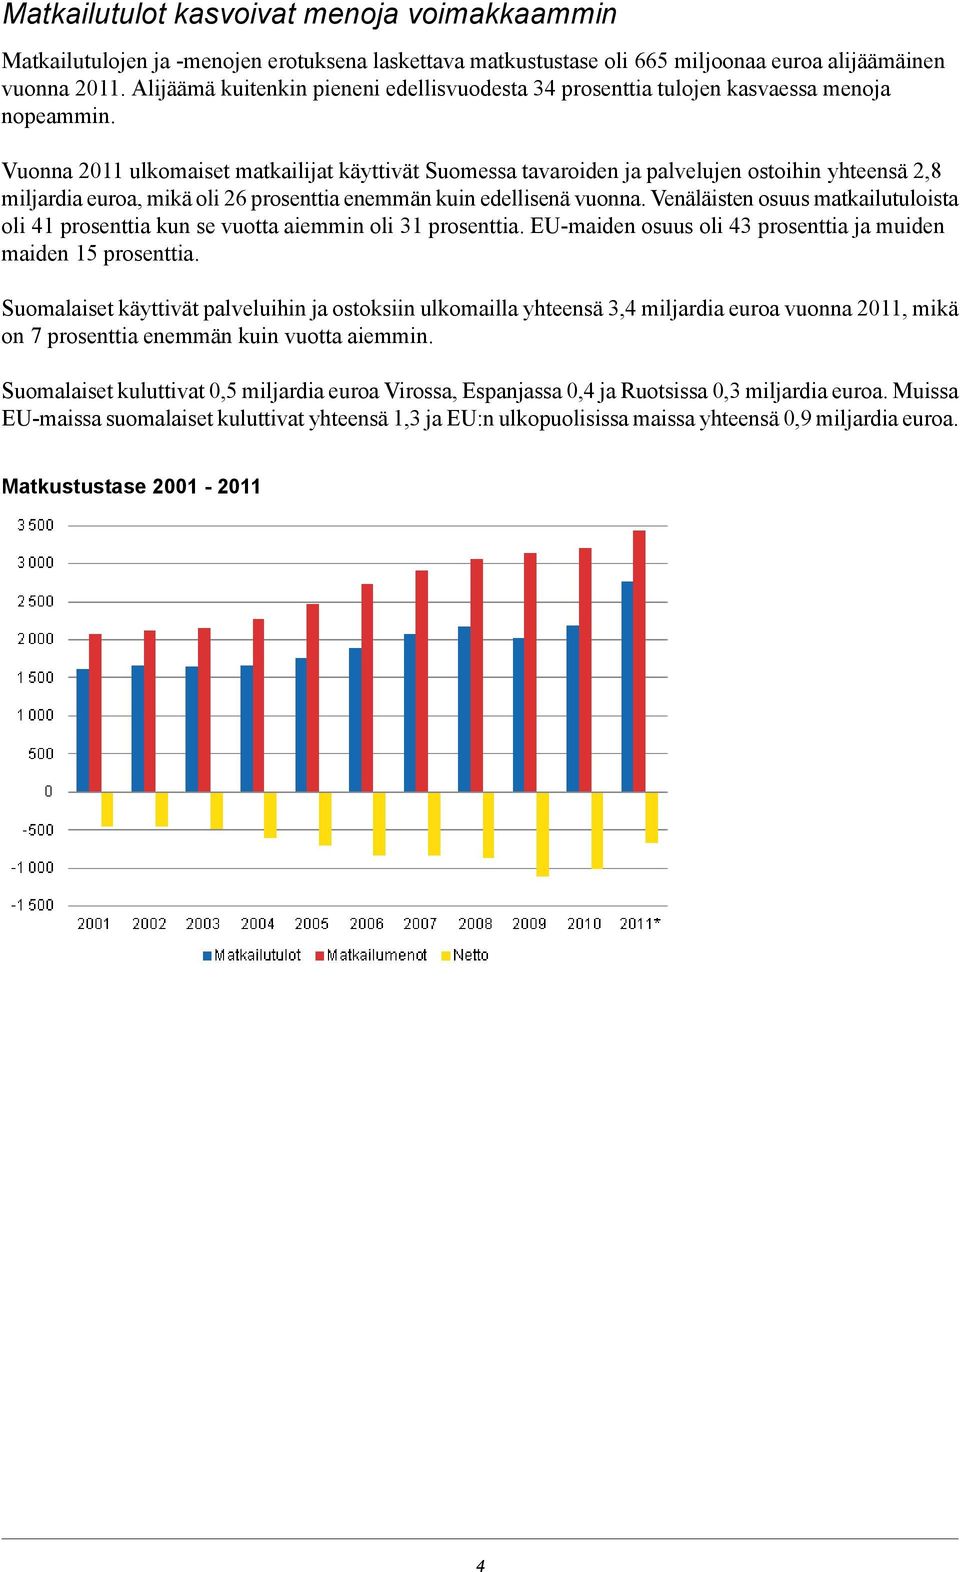 Vuonna 2011 ulkomaiset matkailijat käyttivät Suomessa tavaroiden ja palvelujen ostoihin 2,8 miljardia euroa, mikä oli 26 prosenttia enemmän kuin edellisenä vuonna.